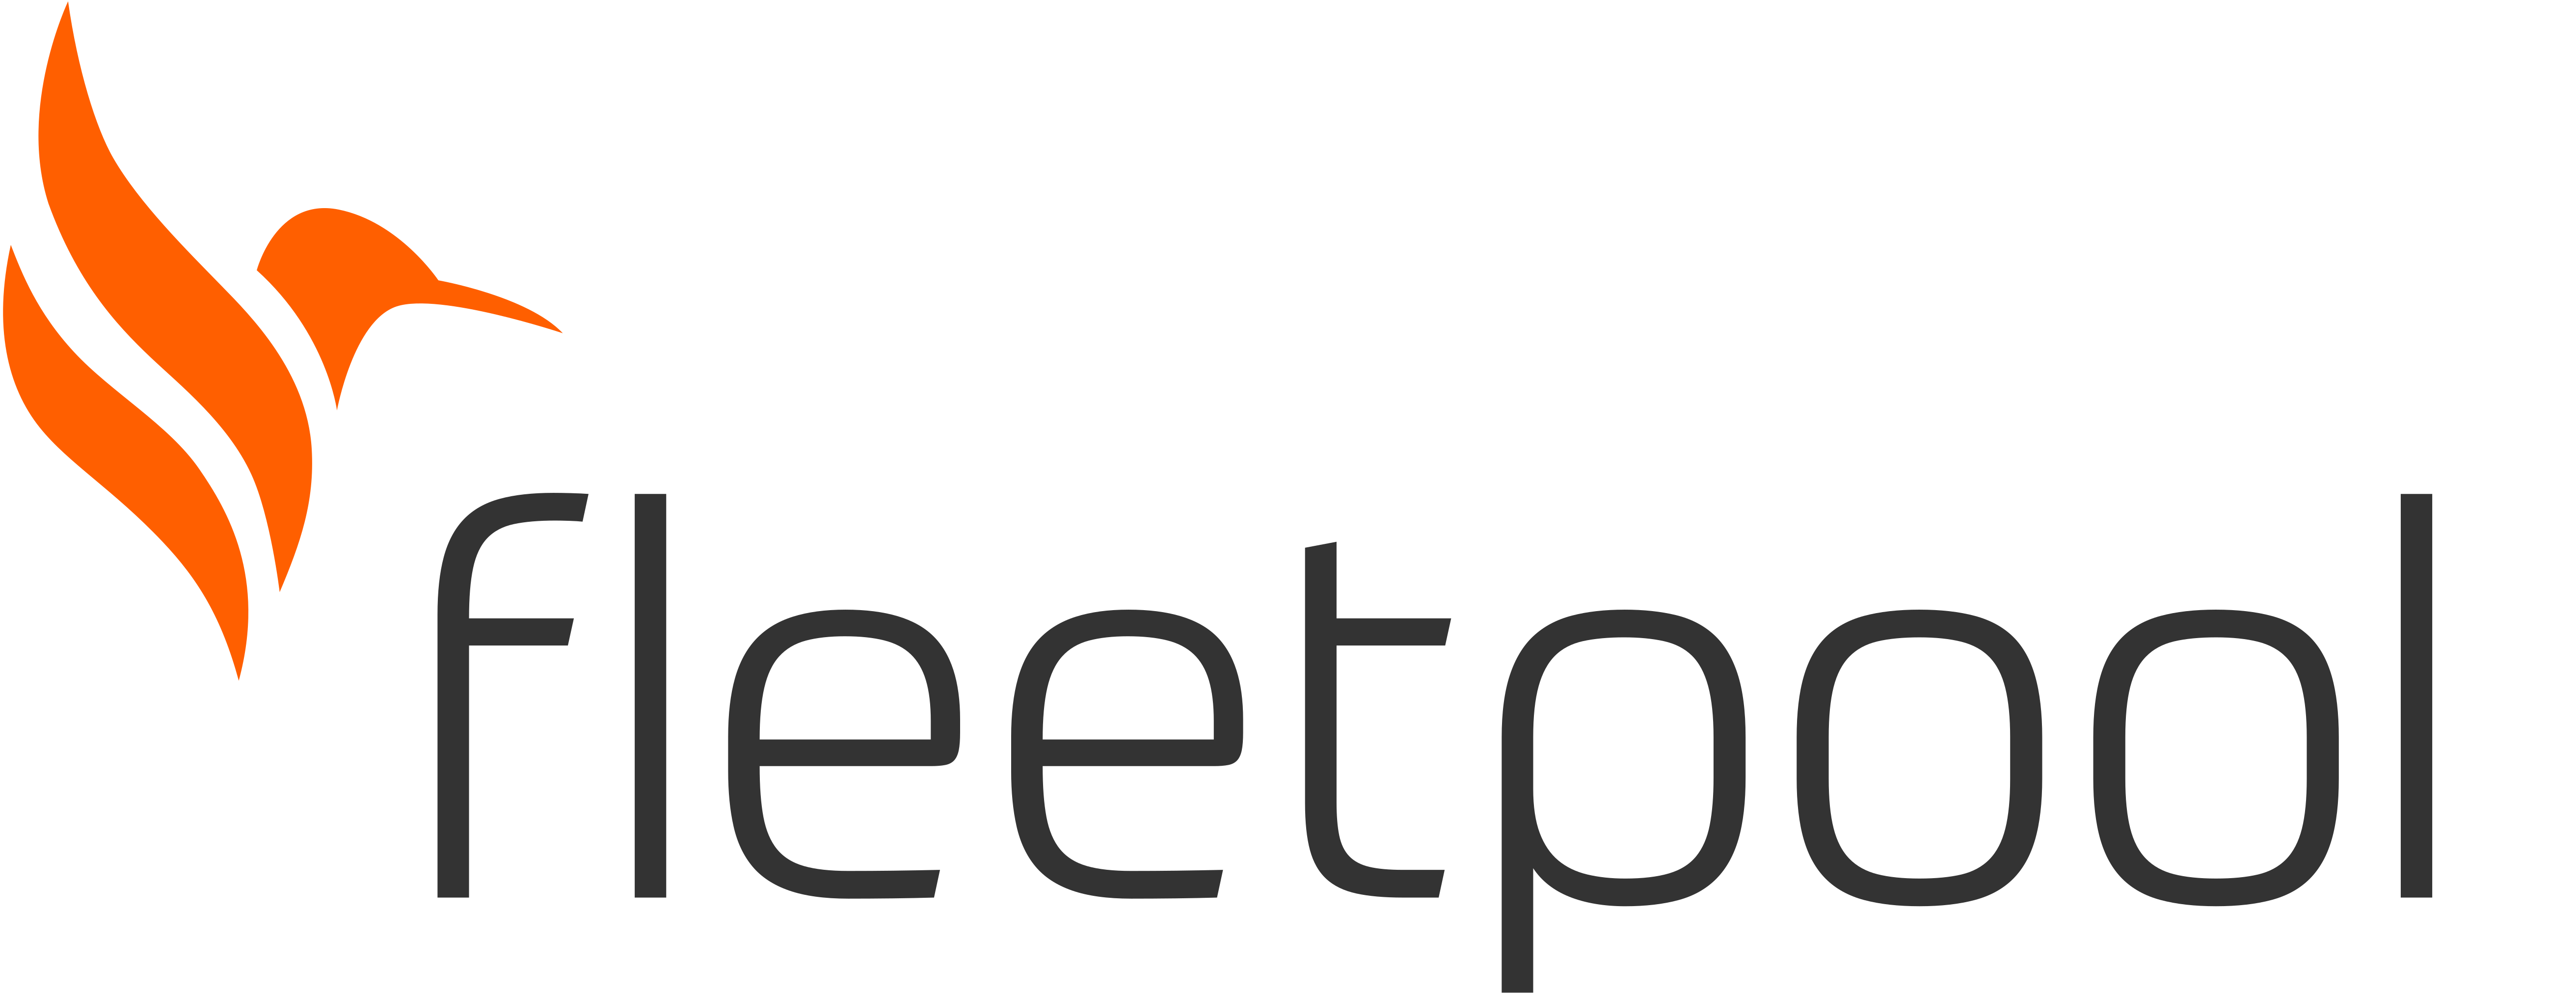 footer-kooperation-logo